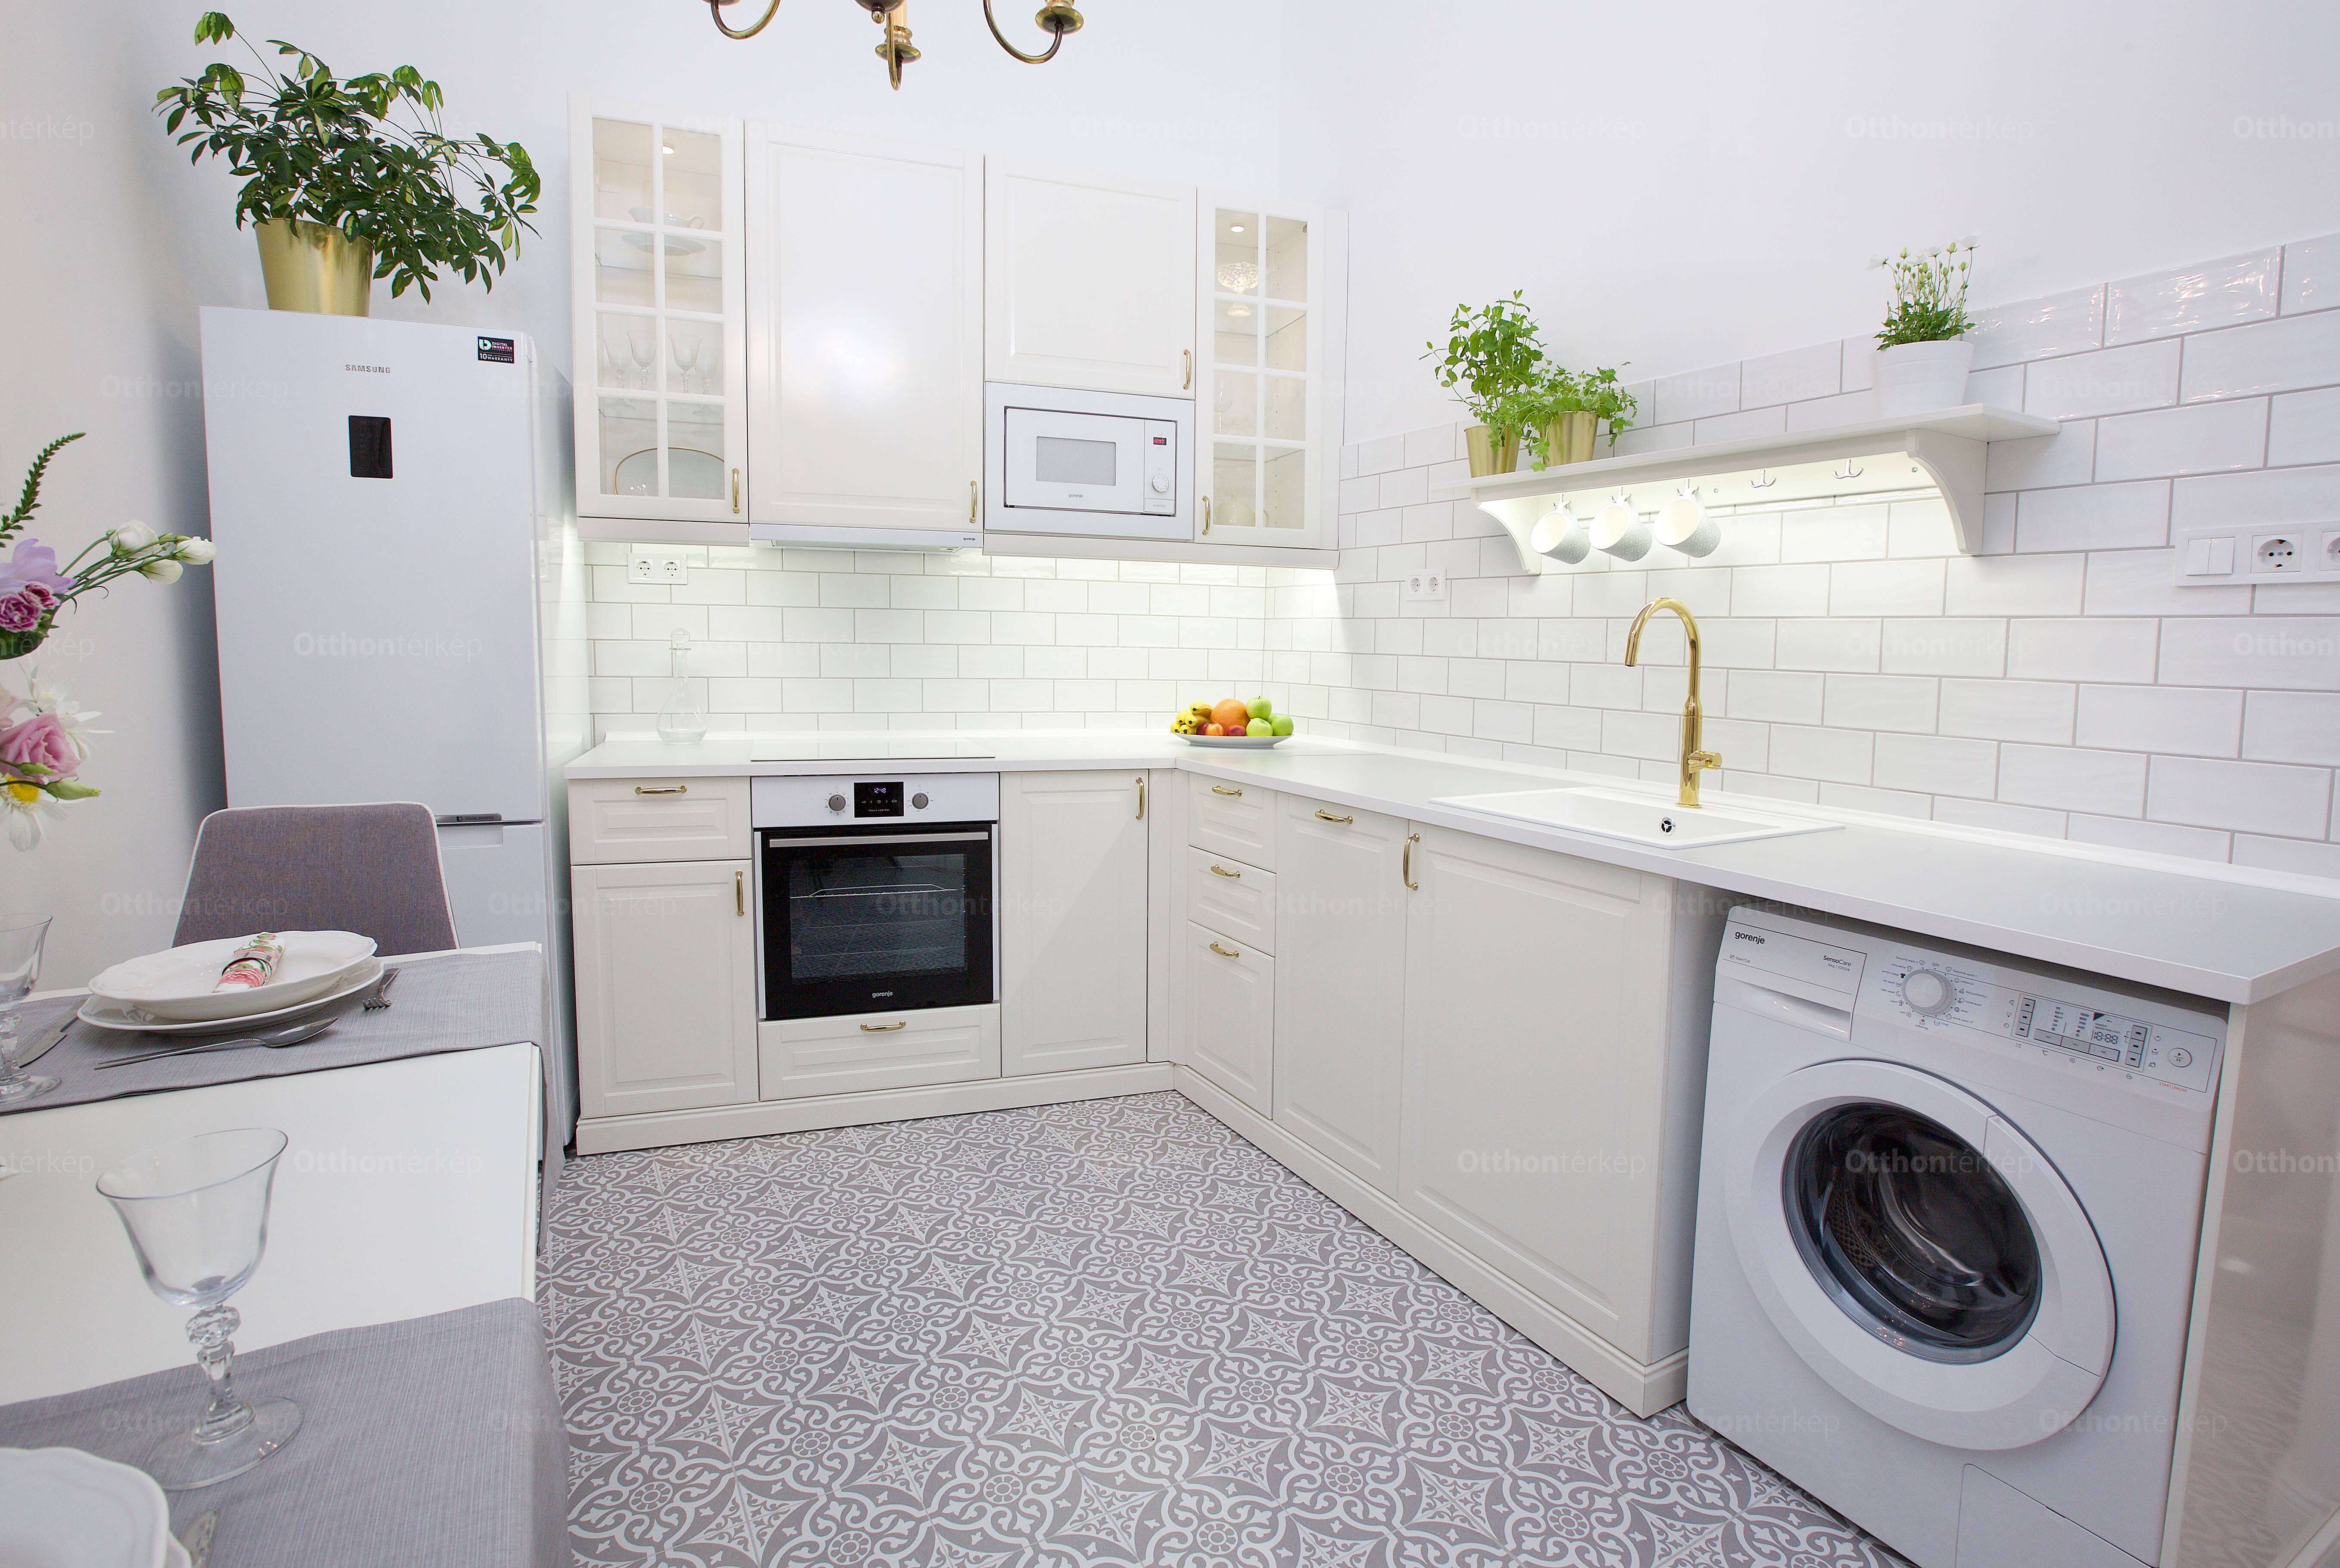 Te is a konyhát nézed meg először egy lakáshirdetésben?